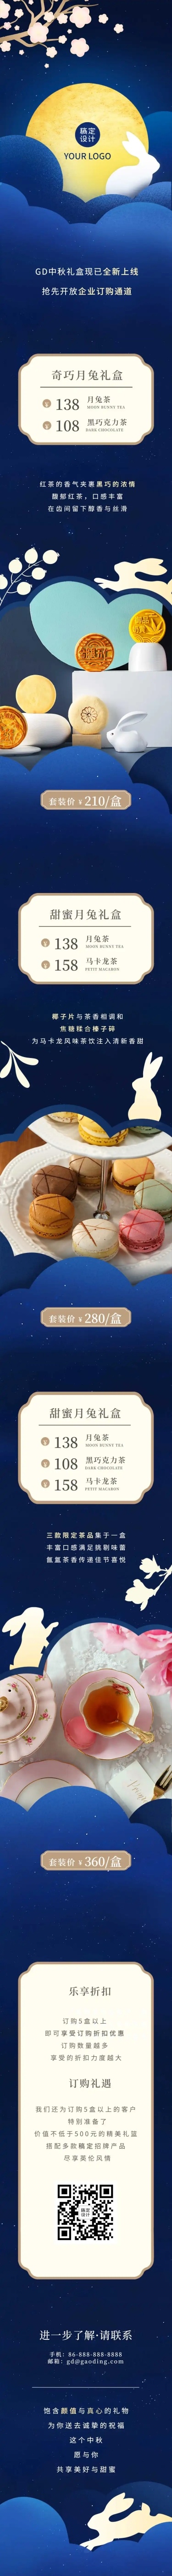 中秋节月饼产品推广定制企业礼品文章长图